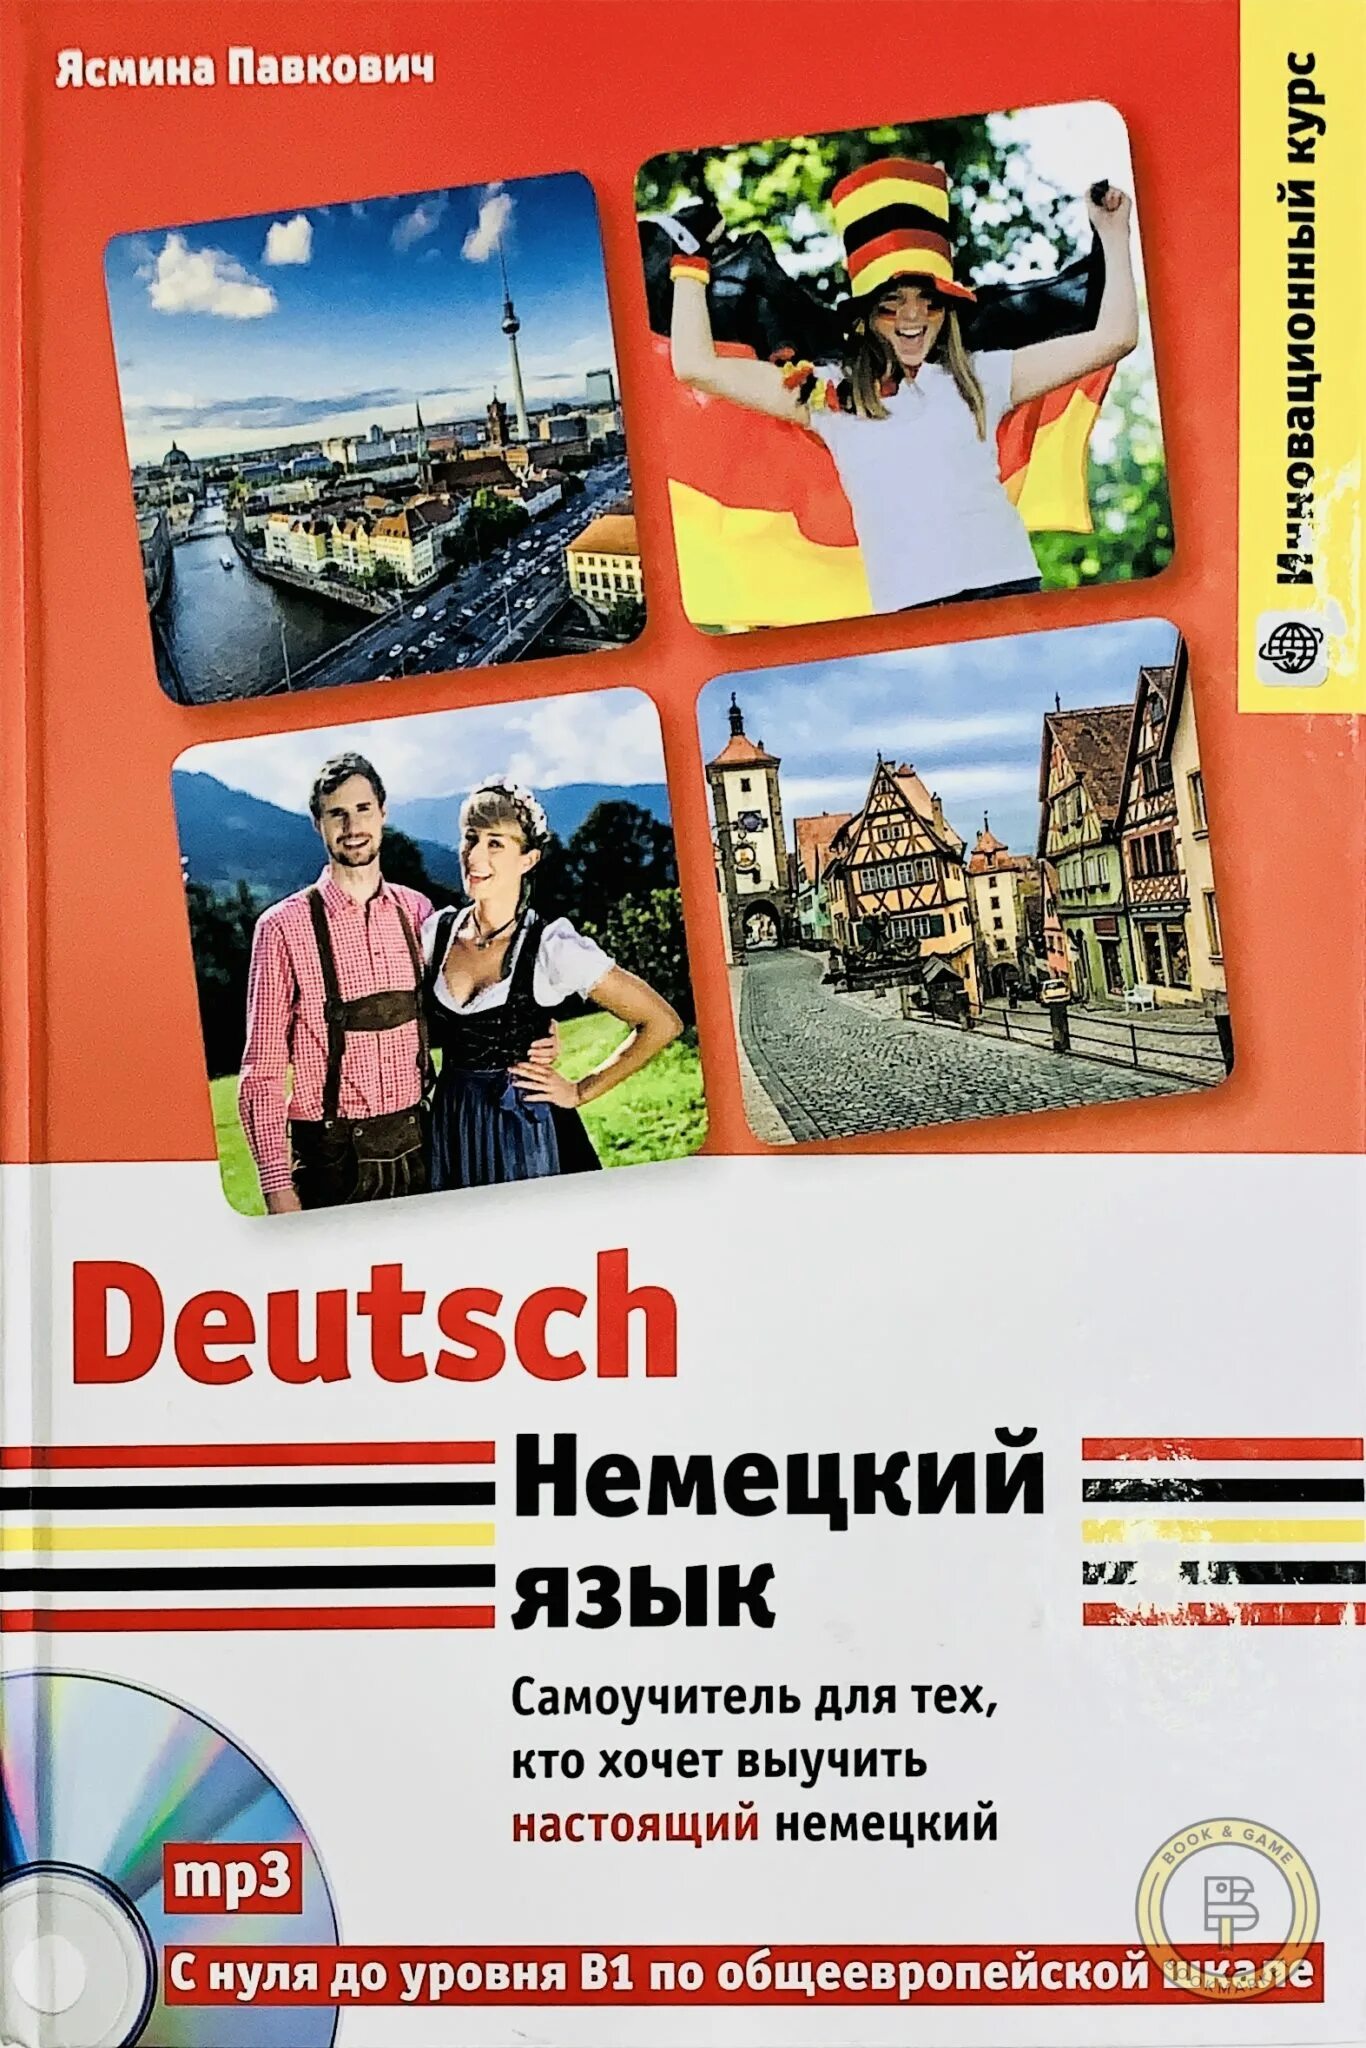 Немецкий язык. Изучение немецкого языка. Немецки. Изучаем немецкий язык. Немецкий язык ру